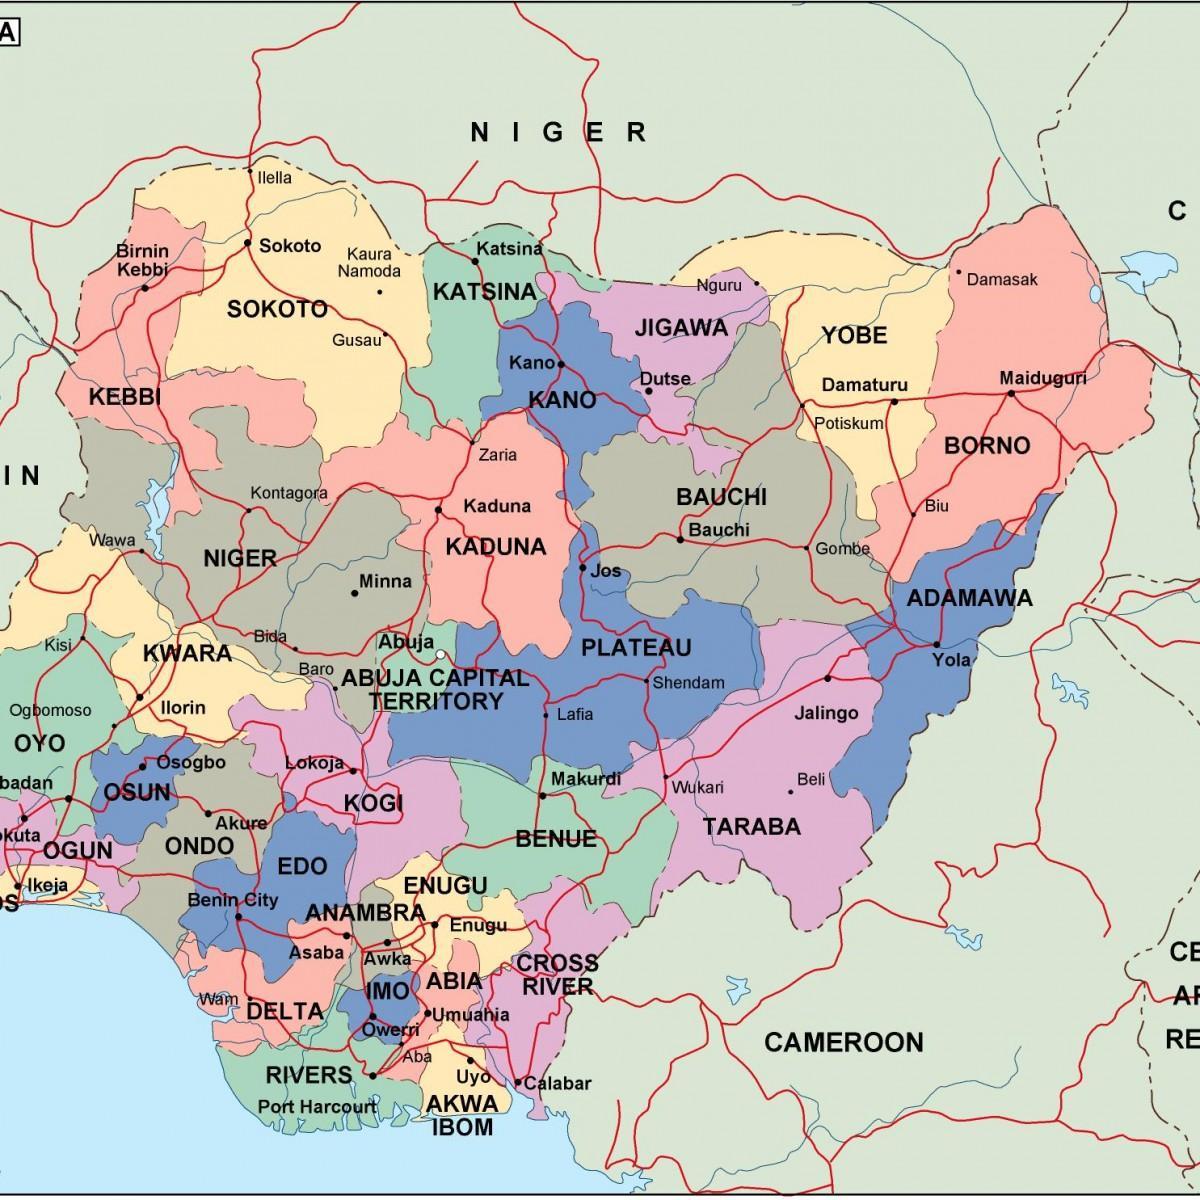 Карта Нігерії з державами і містами